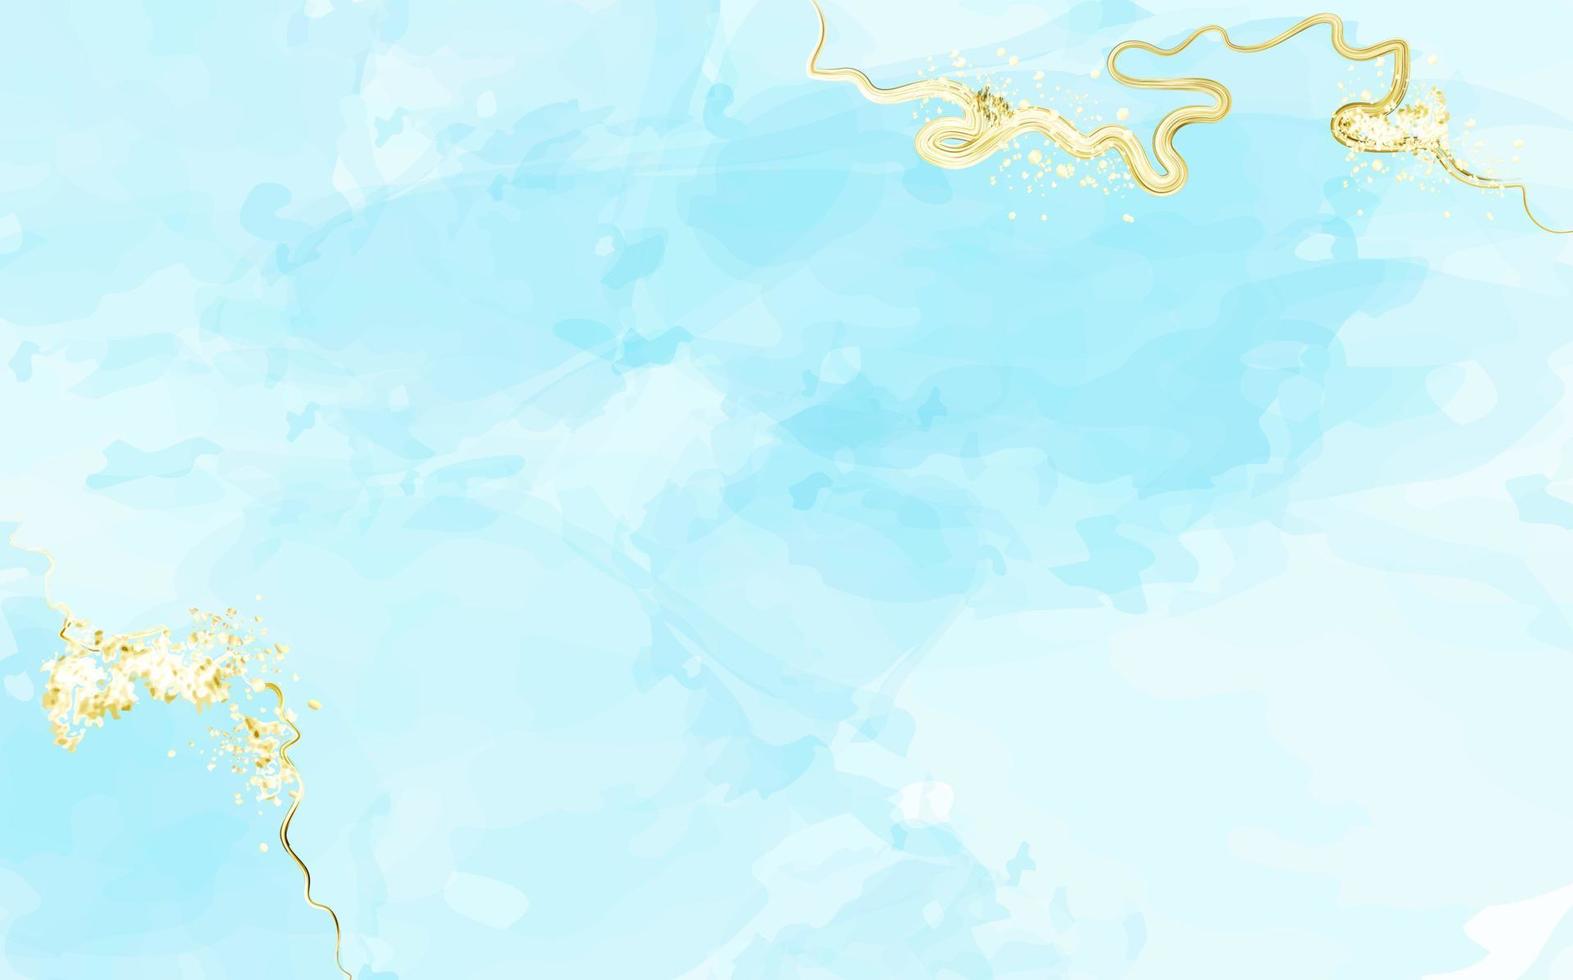 ciel et nuages à l'aquarelle peints à la main, arrière-plan abstrait à l'aquarelle avec texture dorée. .peinture fluide bleue .invitation de mariage de printemps. vecteur